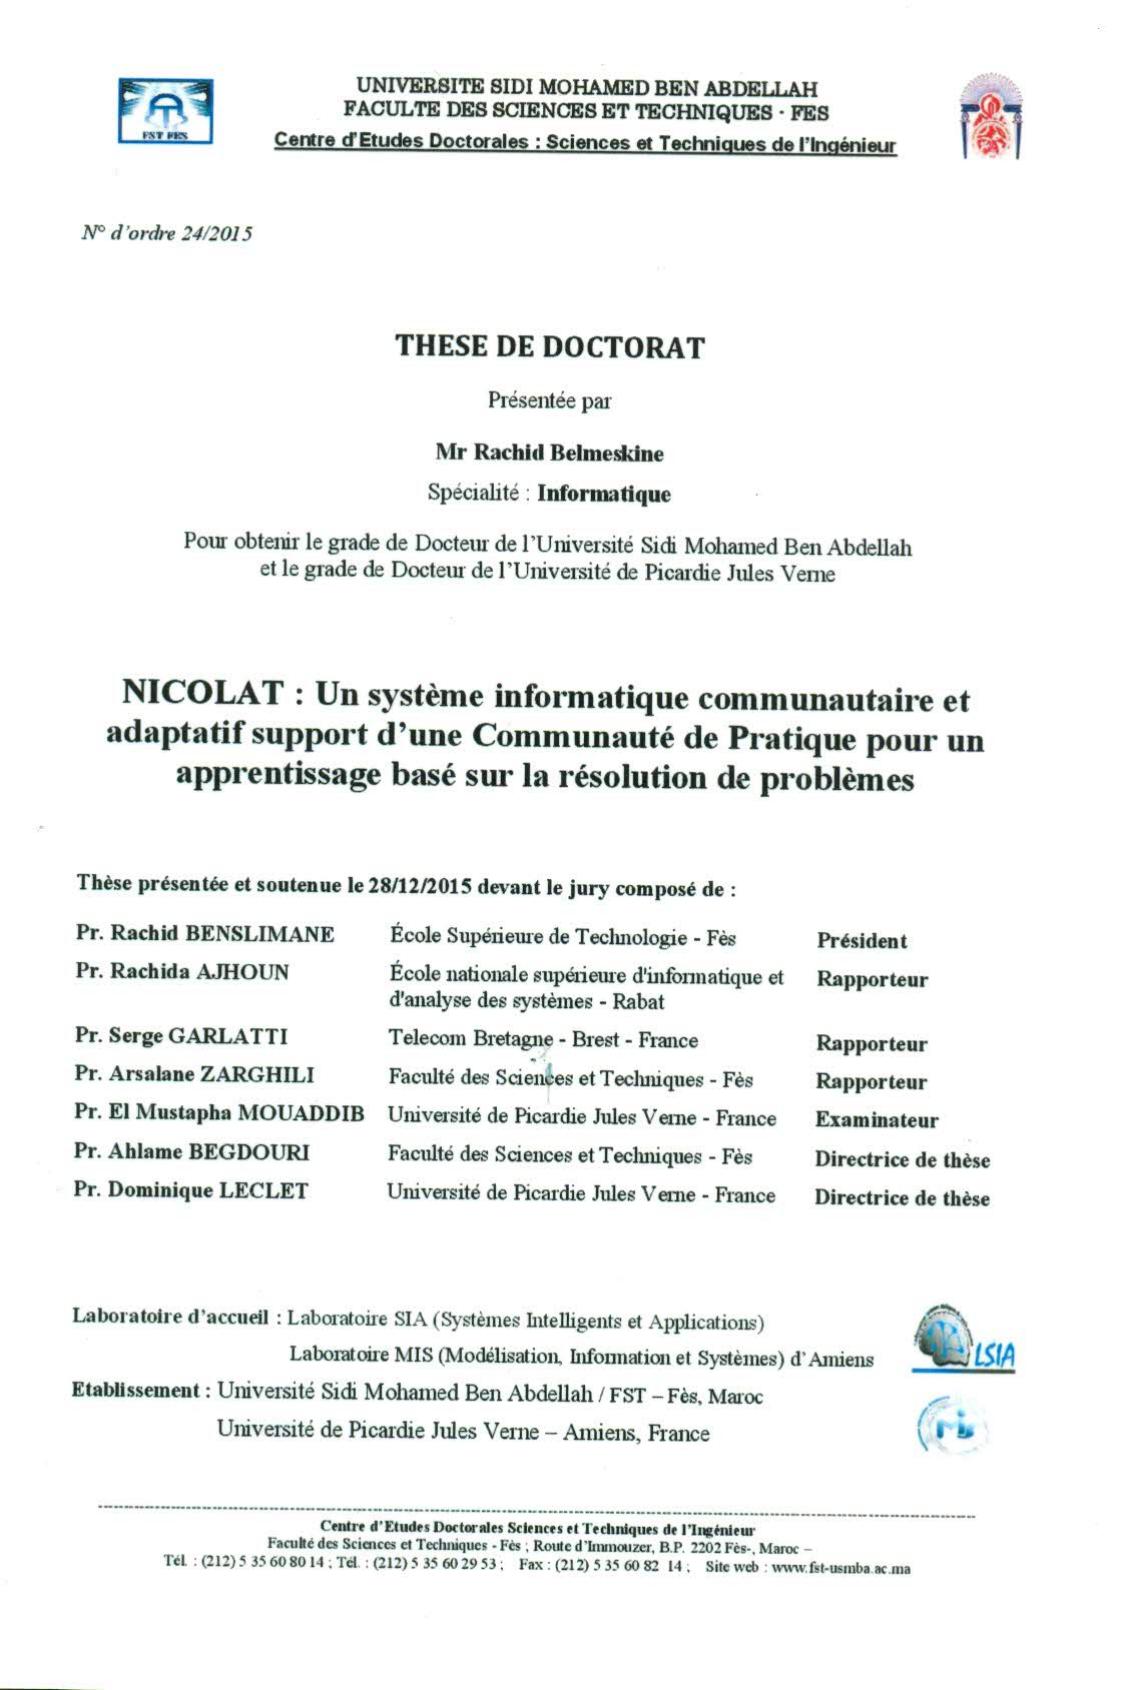 NICOLAT: Un système informatique communautaire et adaptatif support d'une communauté de pratique pour un apprentissage basé sur la résoltion de problèmes